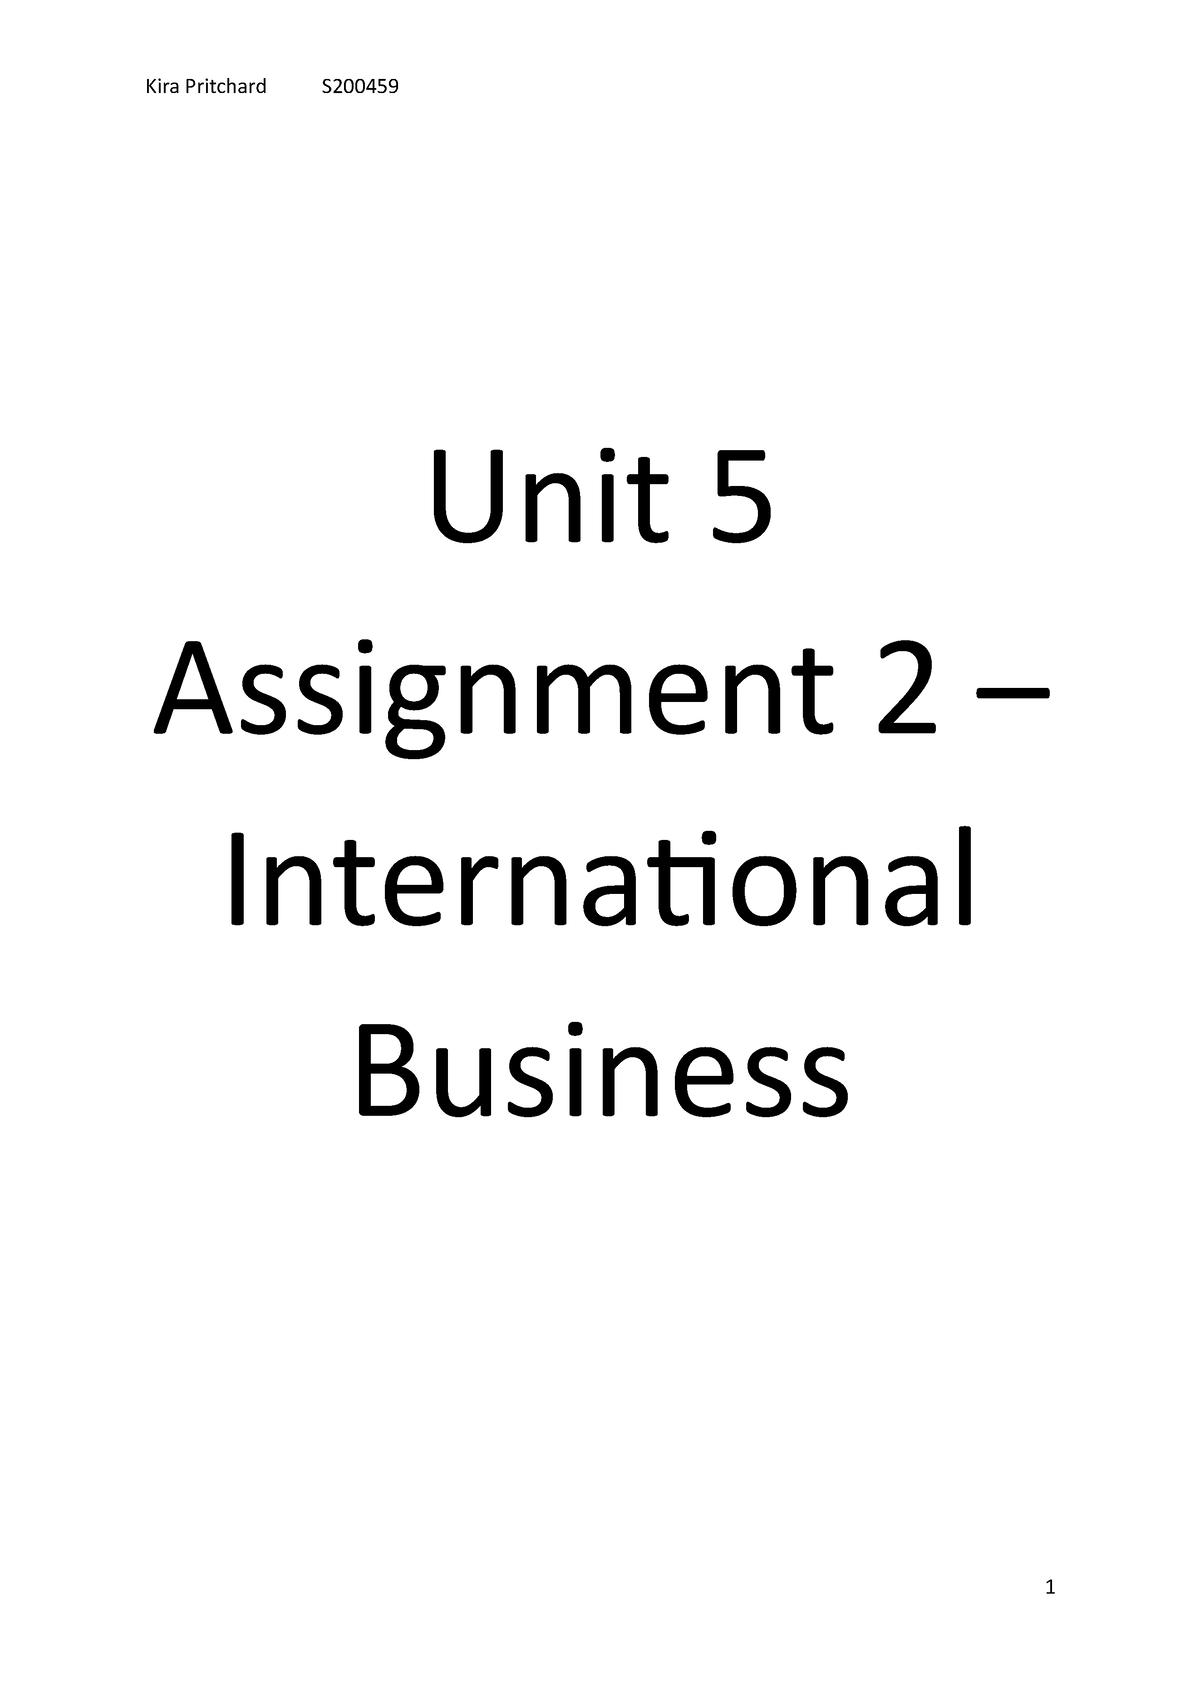 unit 5 international business assignment 2 tesco